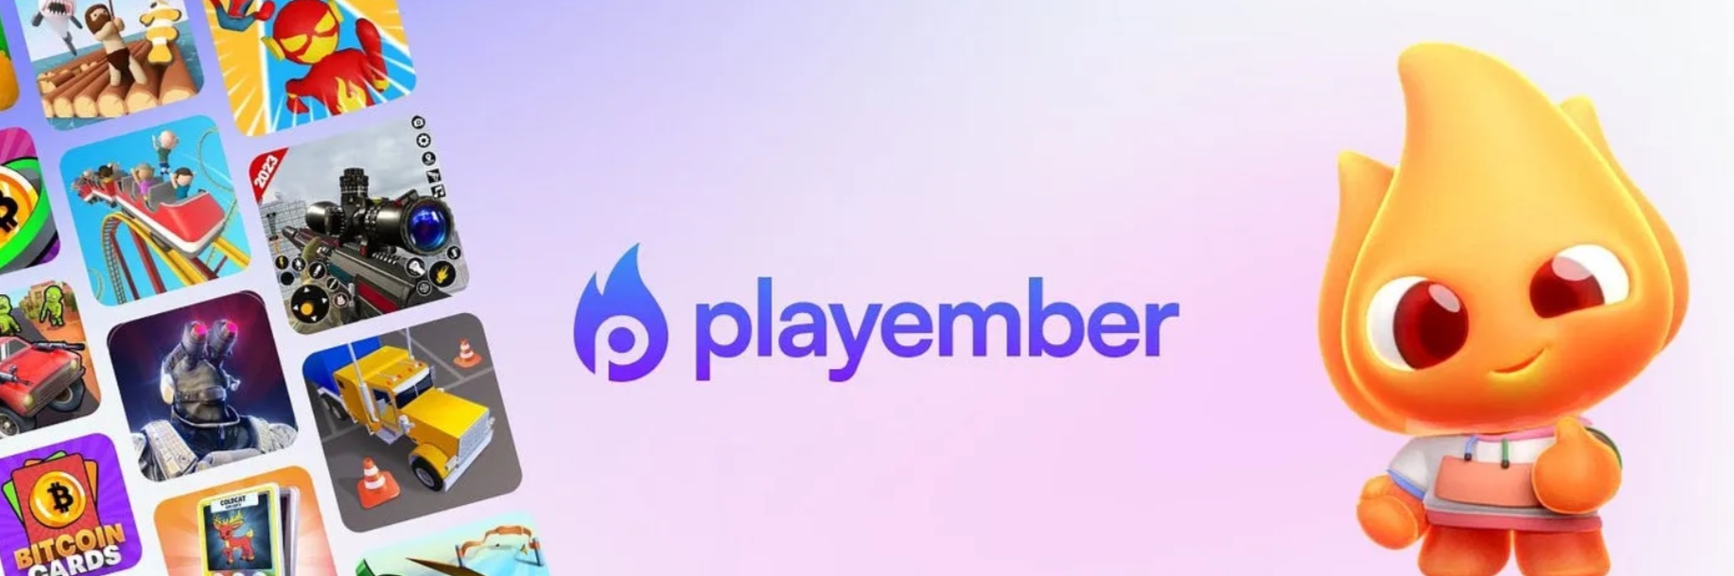 PlayEmber - thương hiệu với những dòng game thuần giải trí đình đám